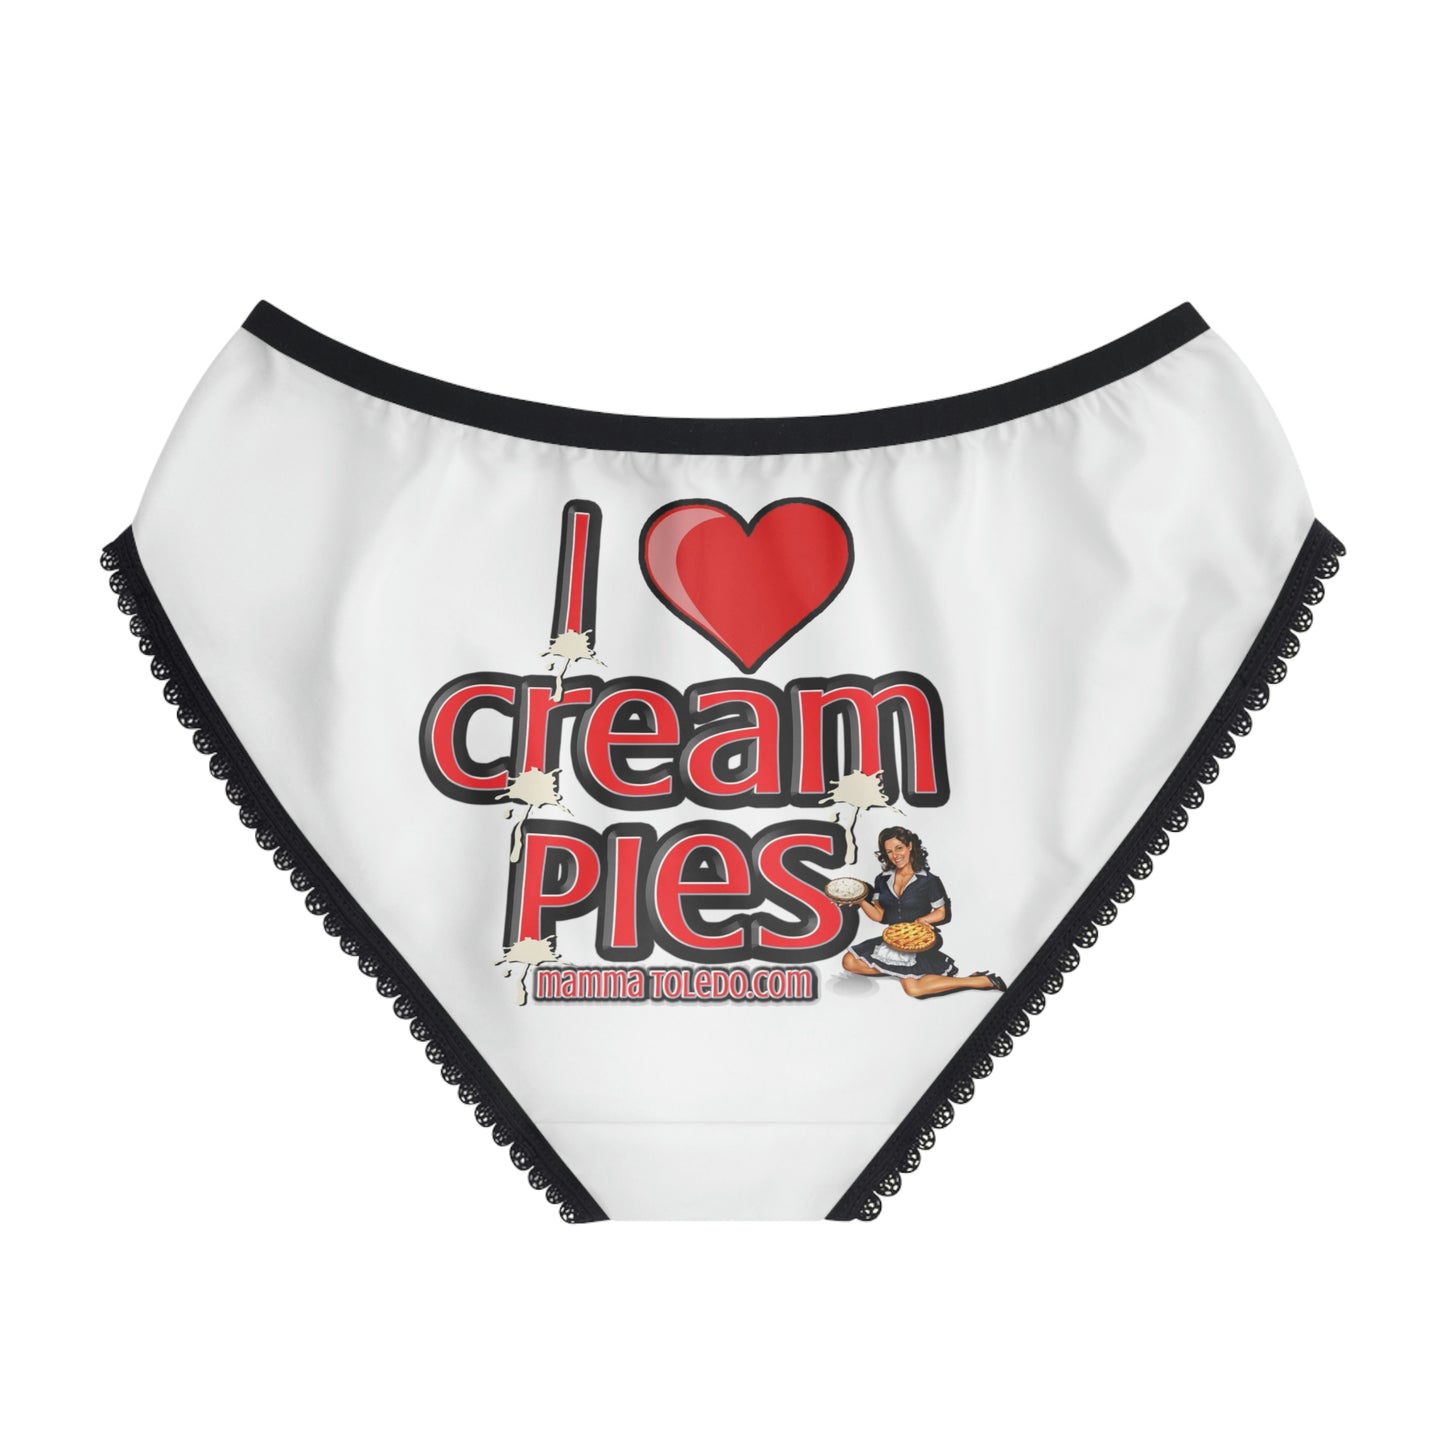 Mamma's Cream Pie Women's Briefs